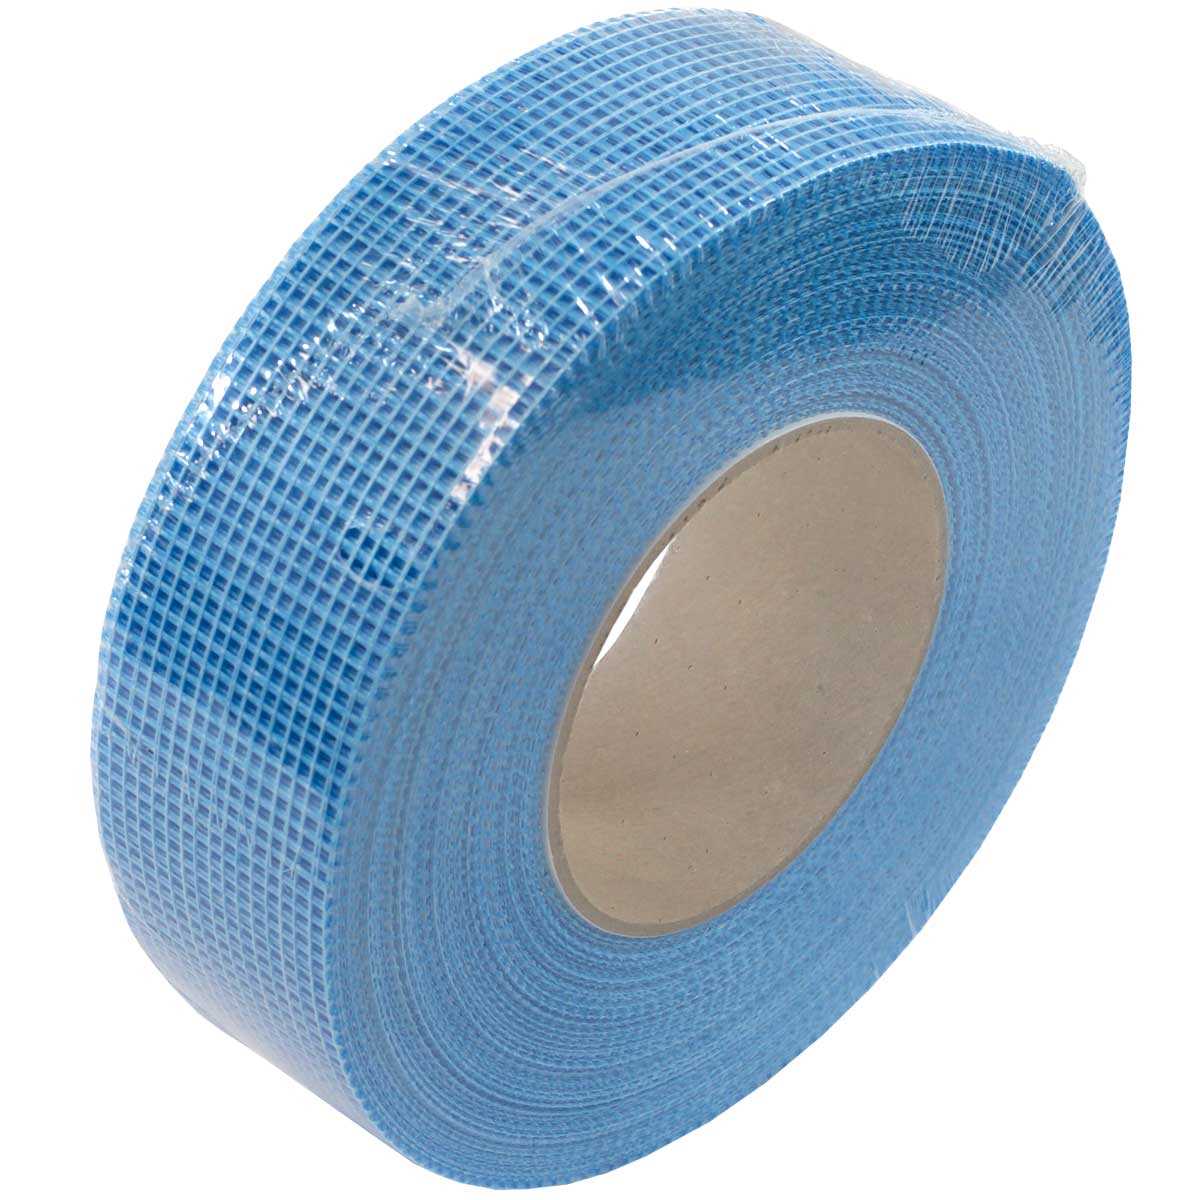 All-Wall Blue Fiberglass Mesh Drywall Tape 1-7/8 X 300